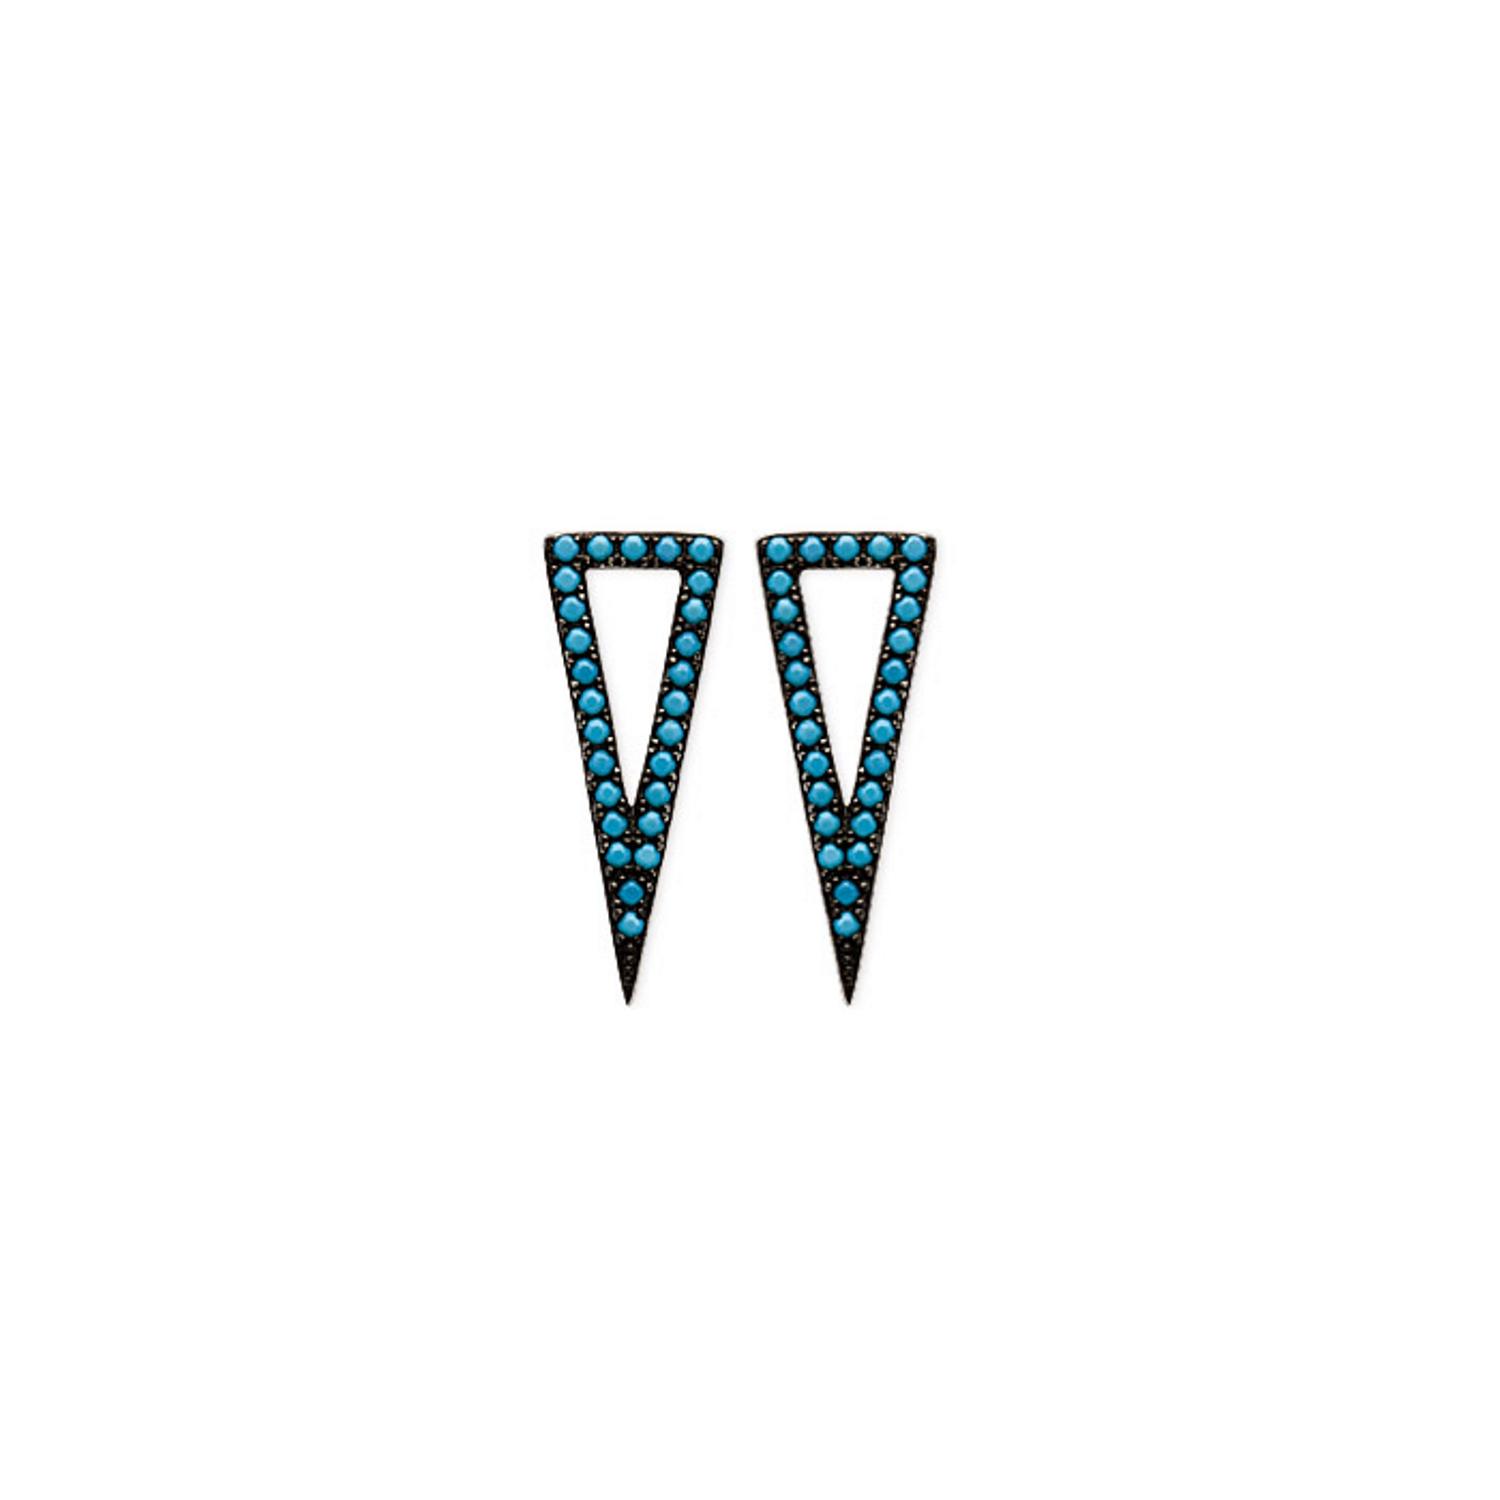 Boucles d'oreilles en argent 925/000 rhodié et pierre d'imitation turquoise. Pendantes Triangle Turquoise  Adolescent Adulte Femme Fille Indémodable 